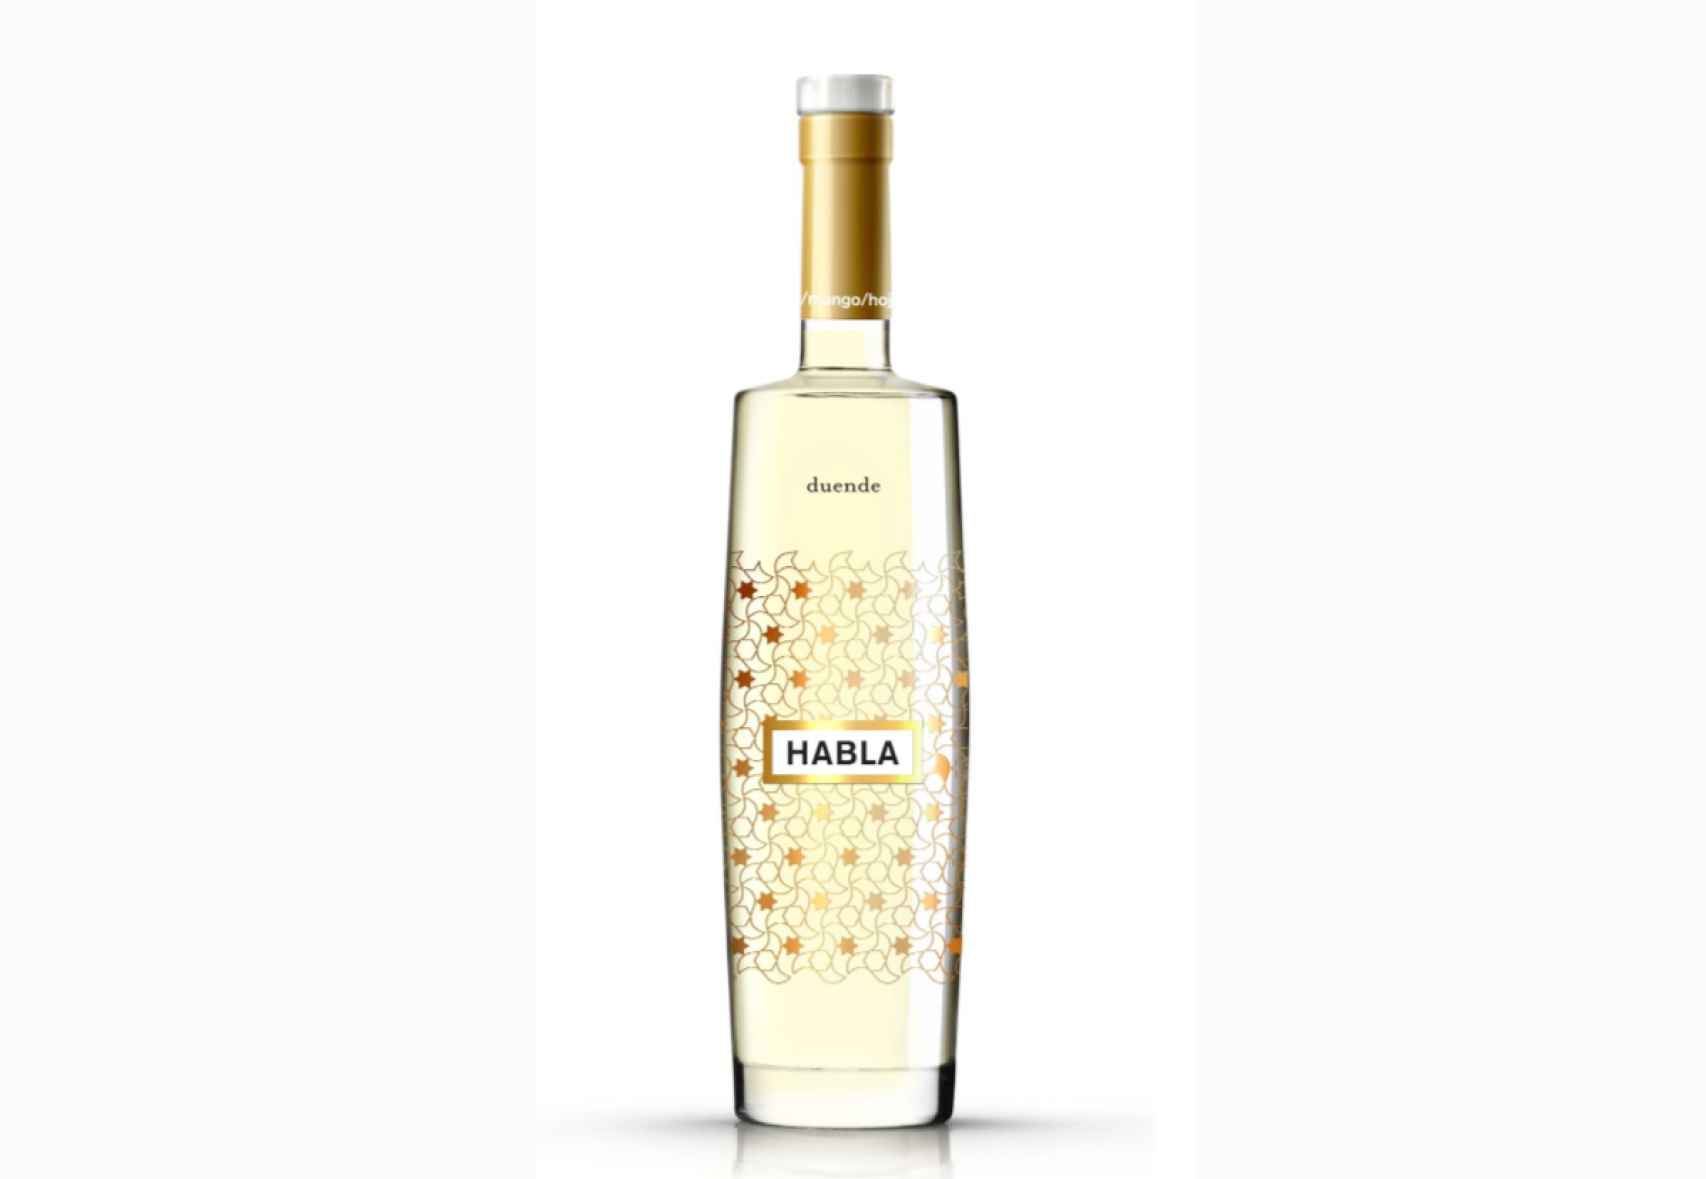 La botella de Habla Duende se inspira en la Alhambra de Granada.